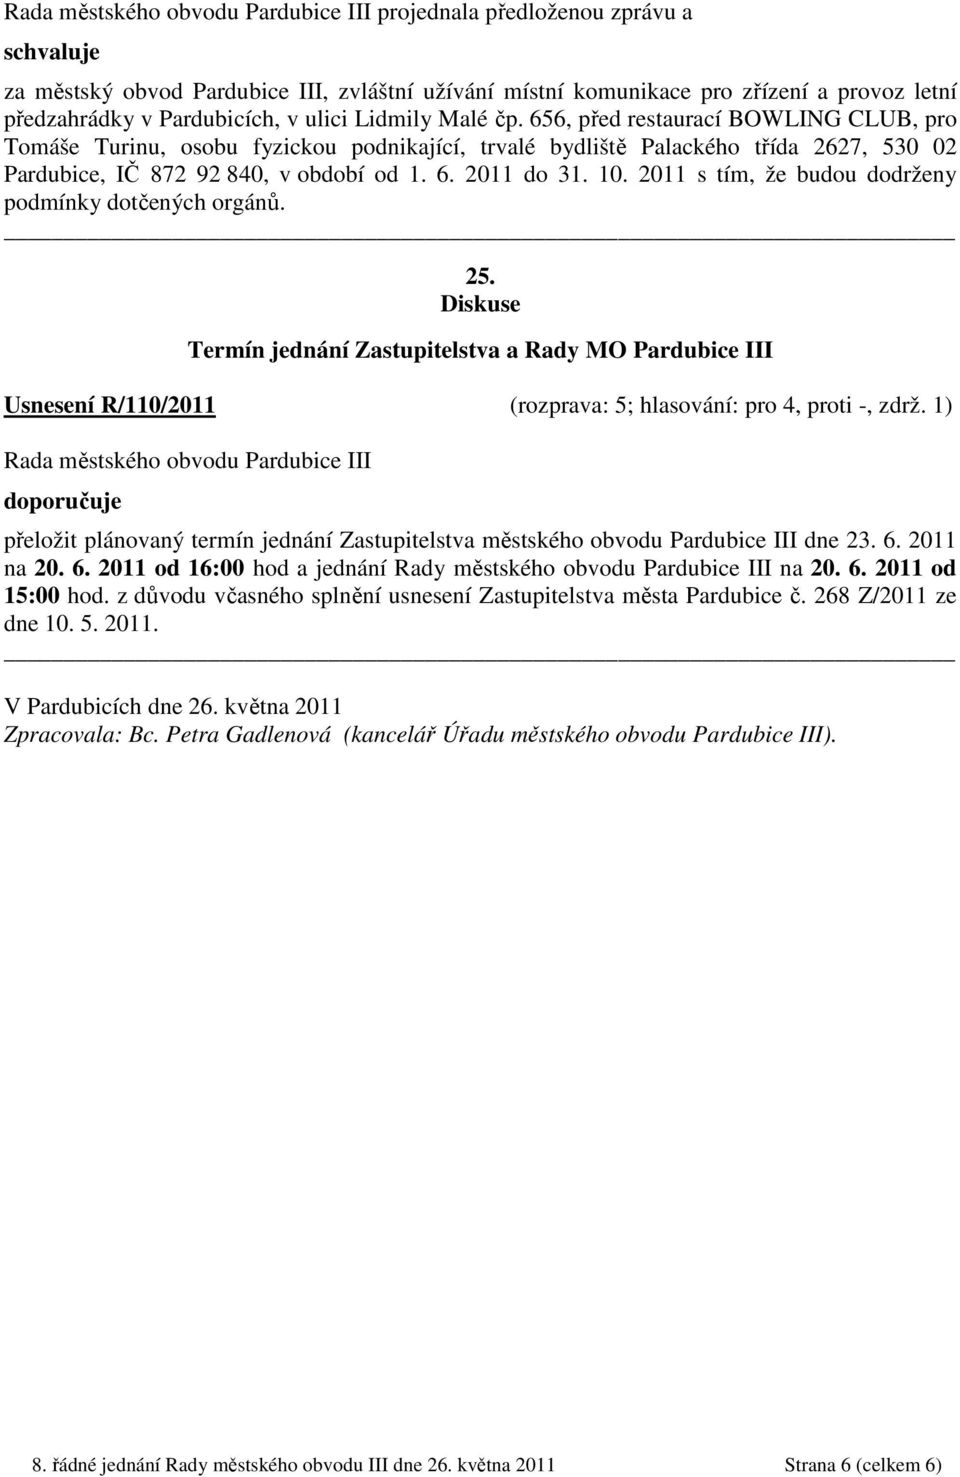 2011 s tím, že budou dodrženy podmínky dotčených orgánů. 25. Diskuse Termín jednání Zastupitelstva a Rady MO Pardubice III Usnesení R/110/2011 (rozprava: 5; hlasování: pro 4, proti -, zdrž.